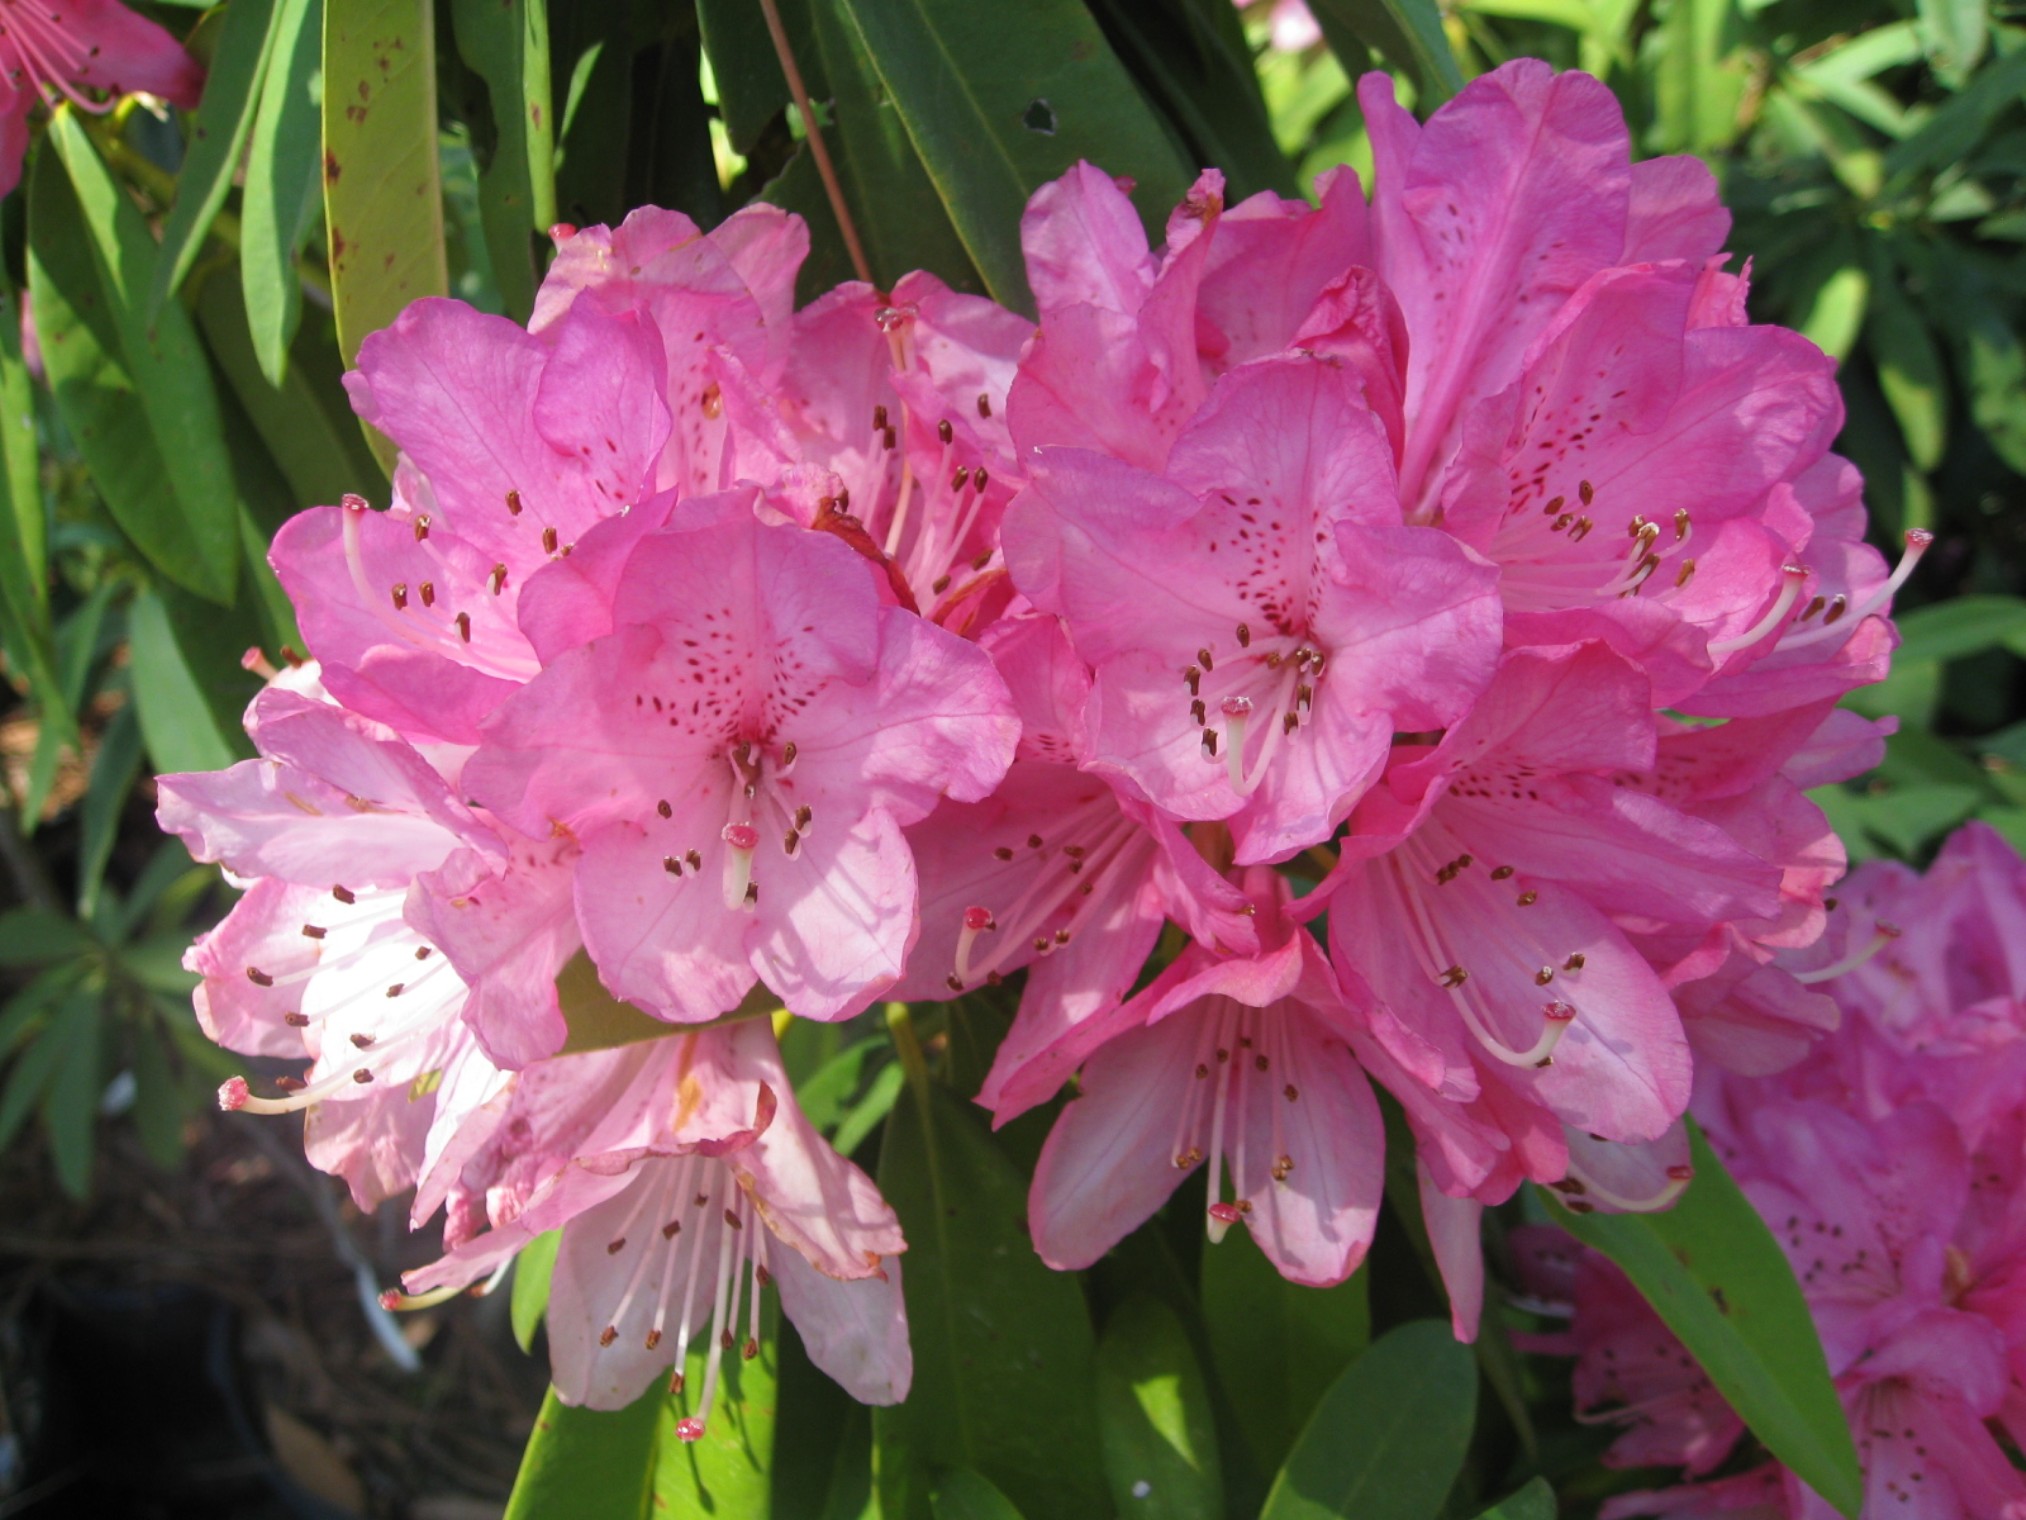 Rhododendron 'Sir Robert Peel' / Sir Robert Peel Rhododendron